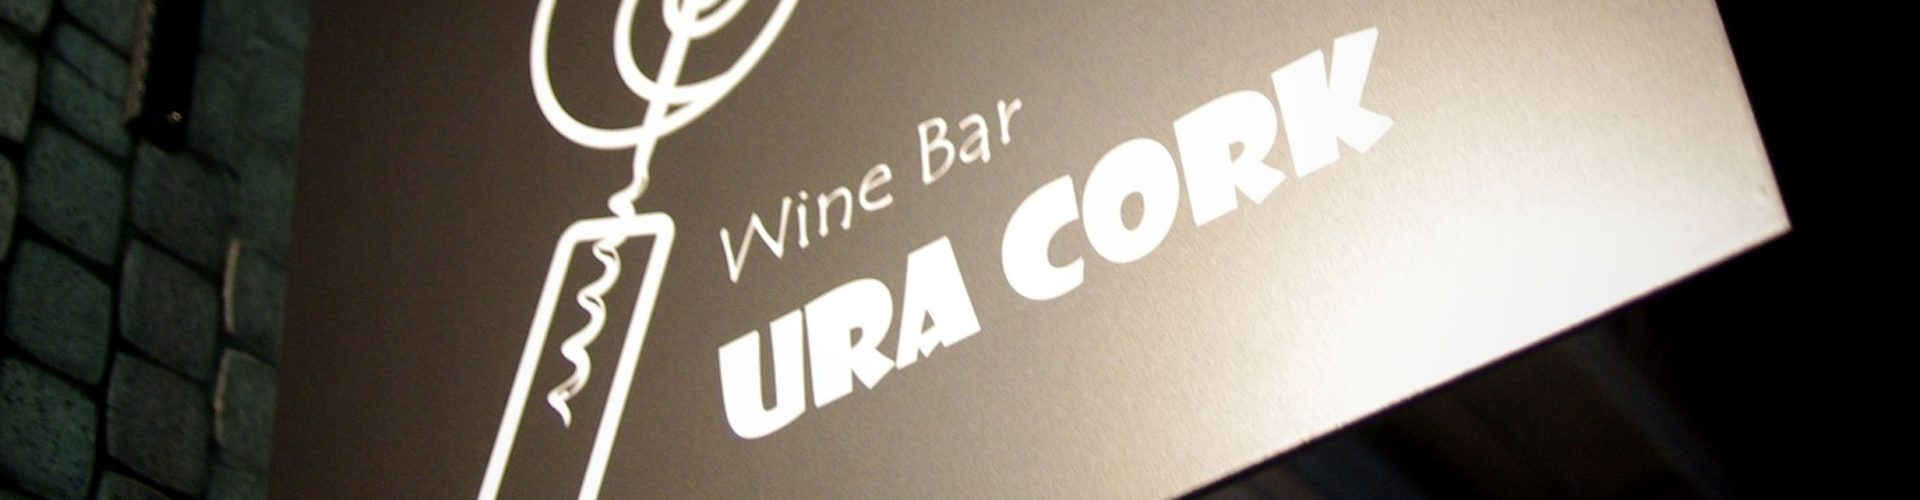 定休日前の月曜日、Wine Bar URACORK、元気に営業してます♪